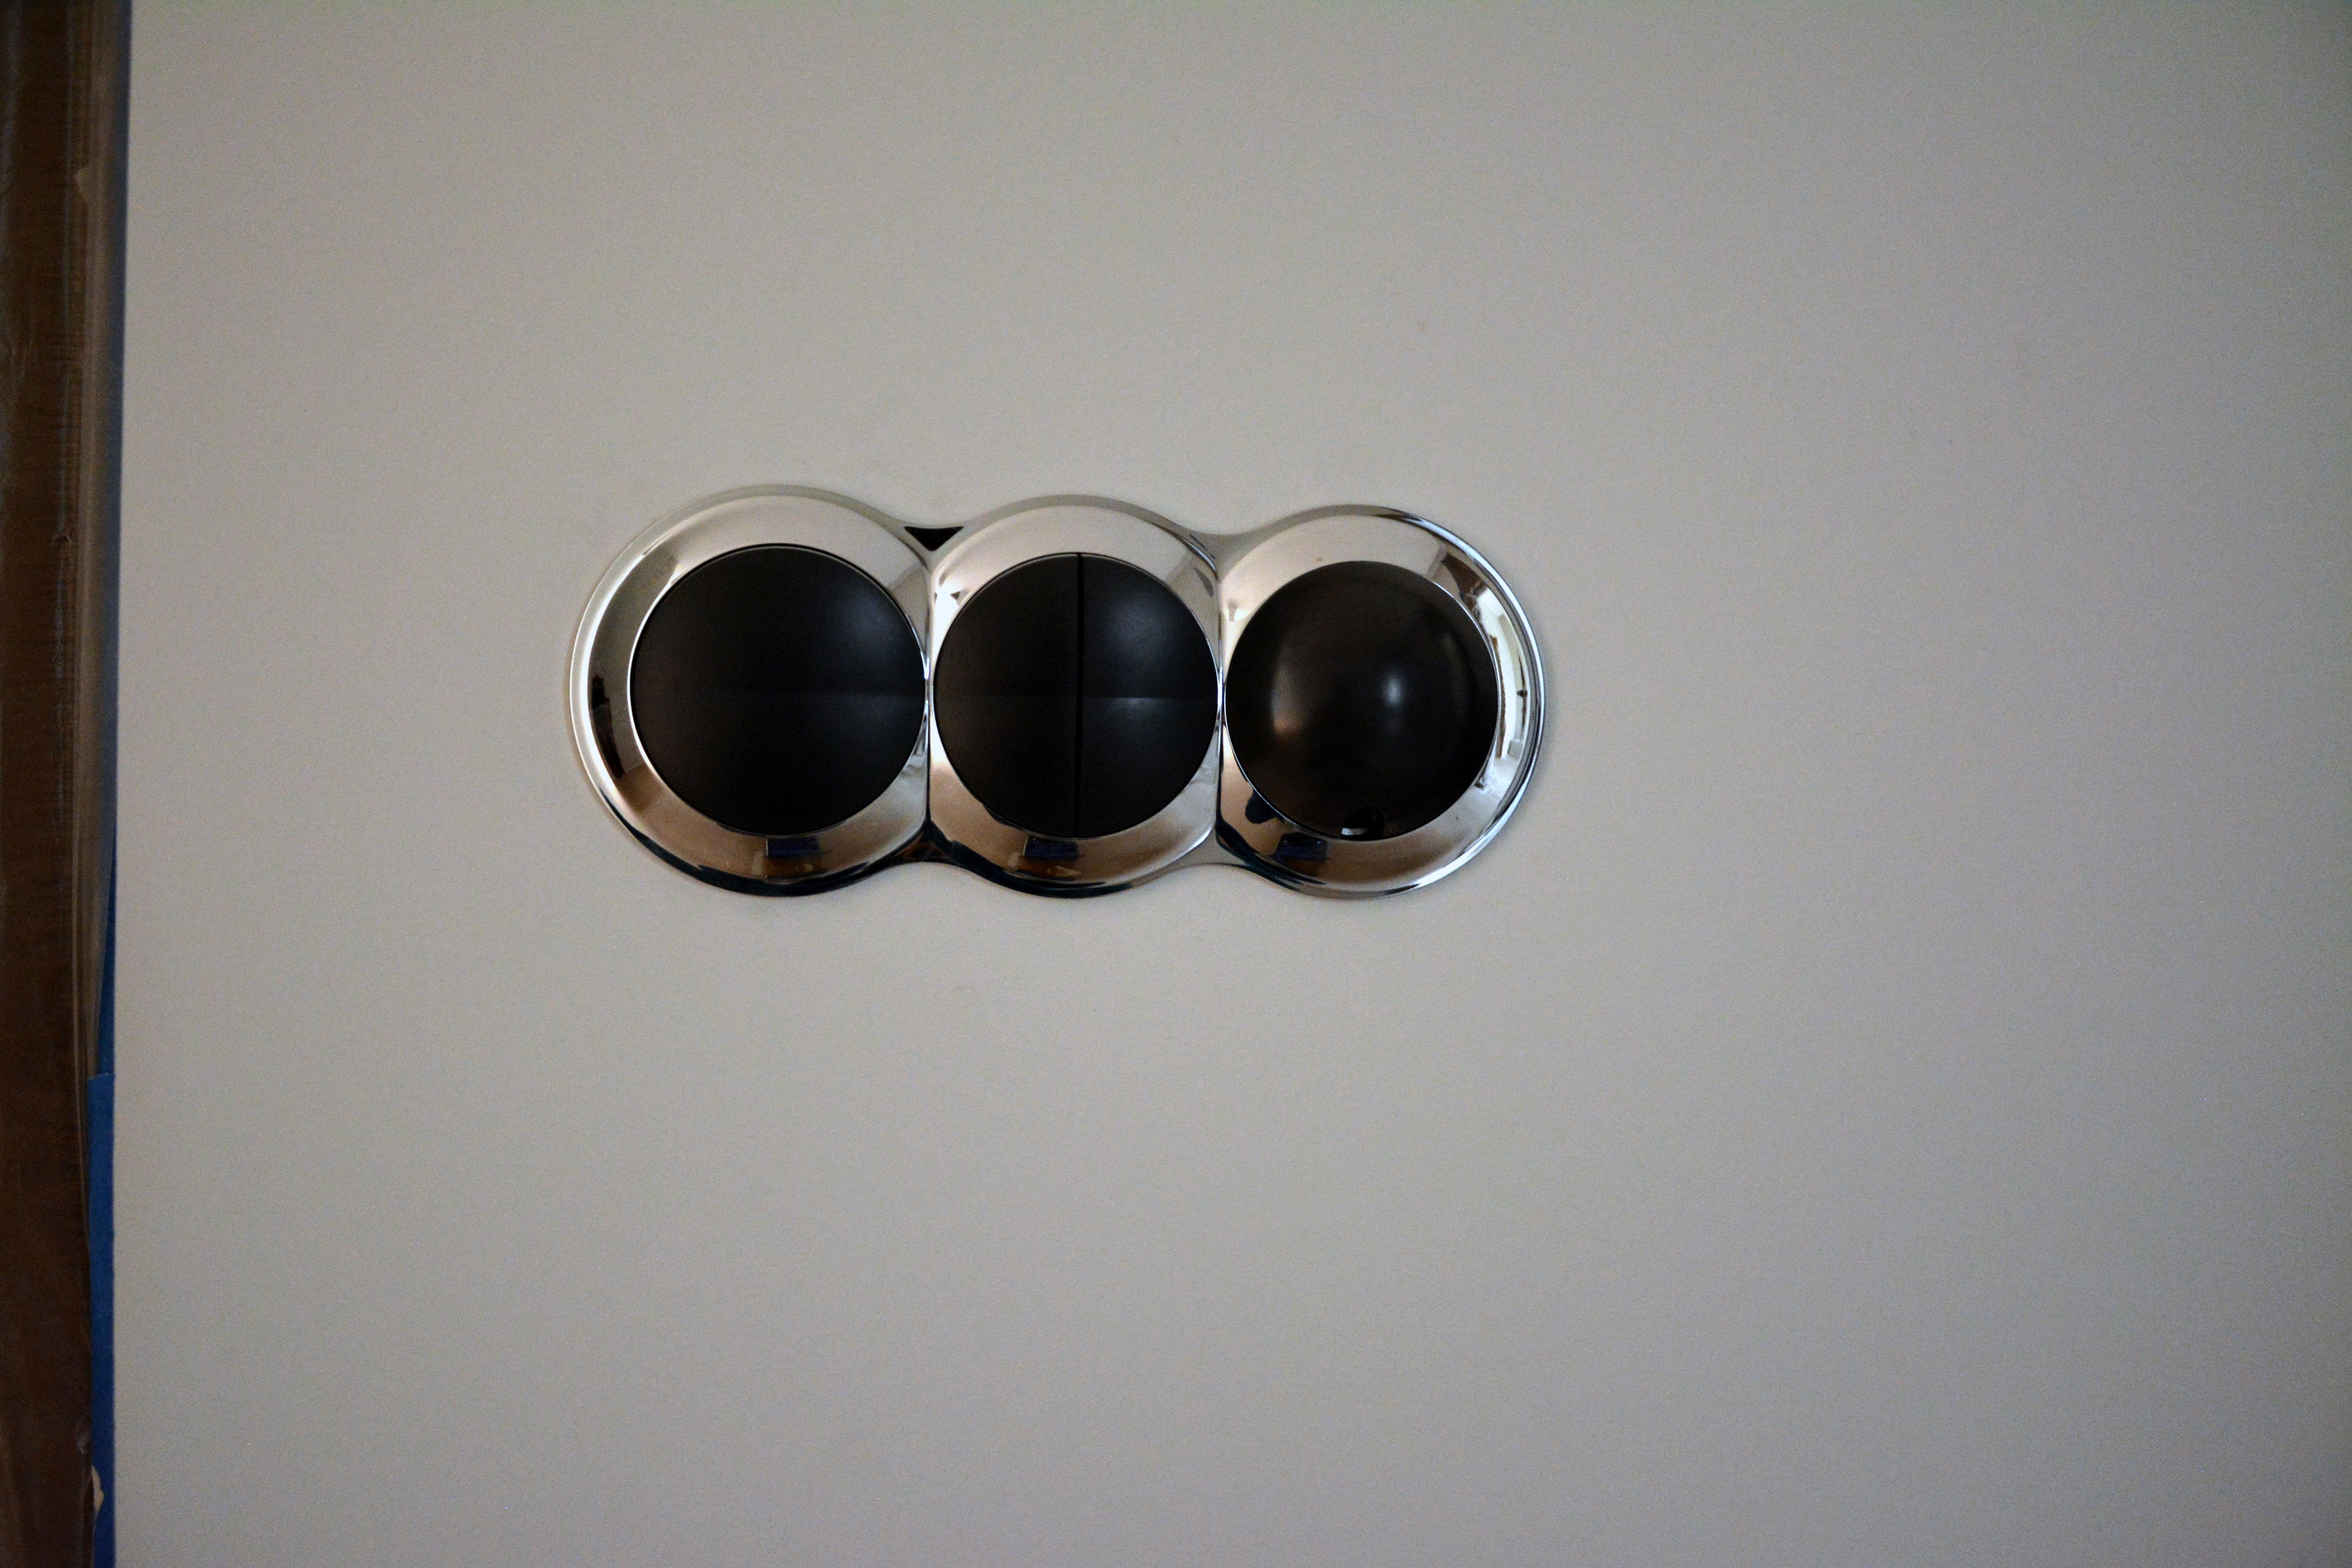 Слева — два клавишных выключателя, справа — датчик температуры в подрозетнике. Едва заметно отверстие в нижней части черного круга, в котором располагается датчик